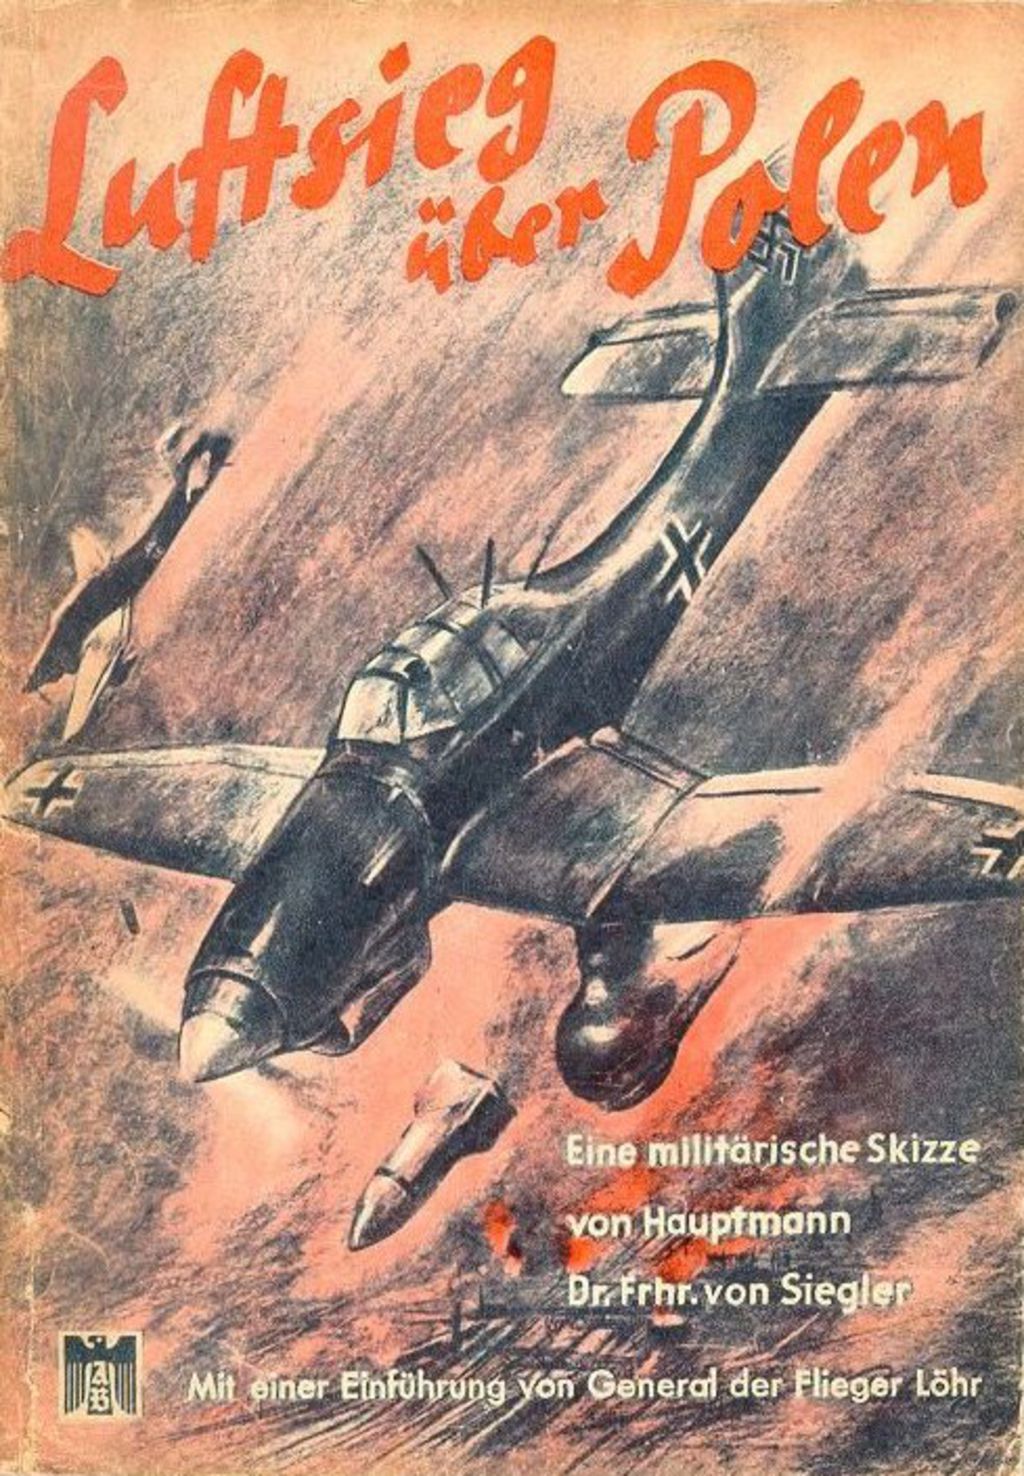 Broschüre: "Luftsieg über Polen", 1940